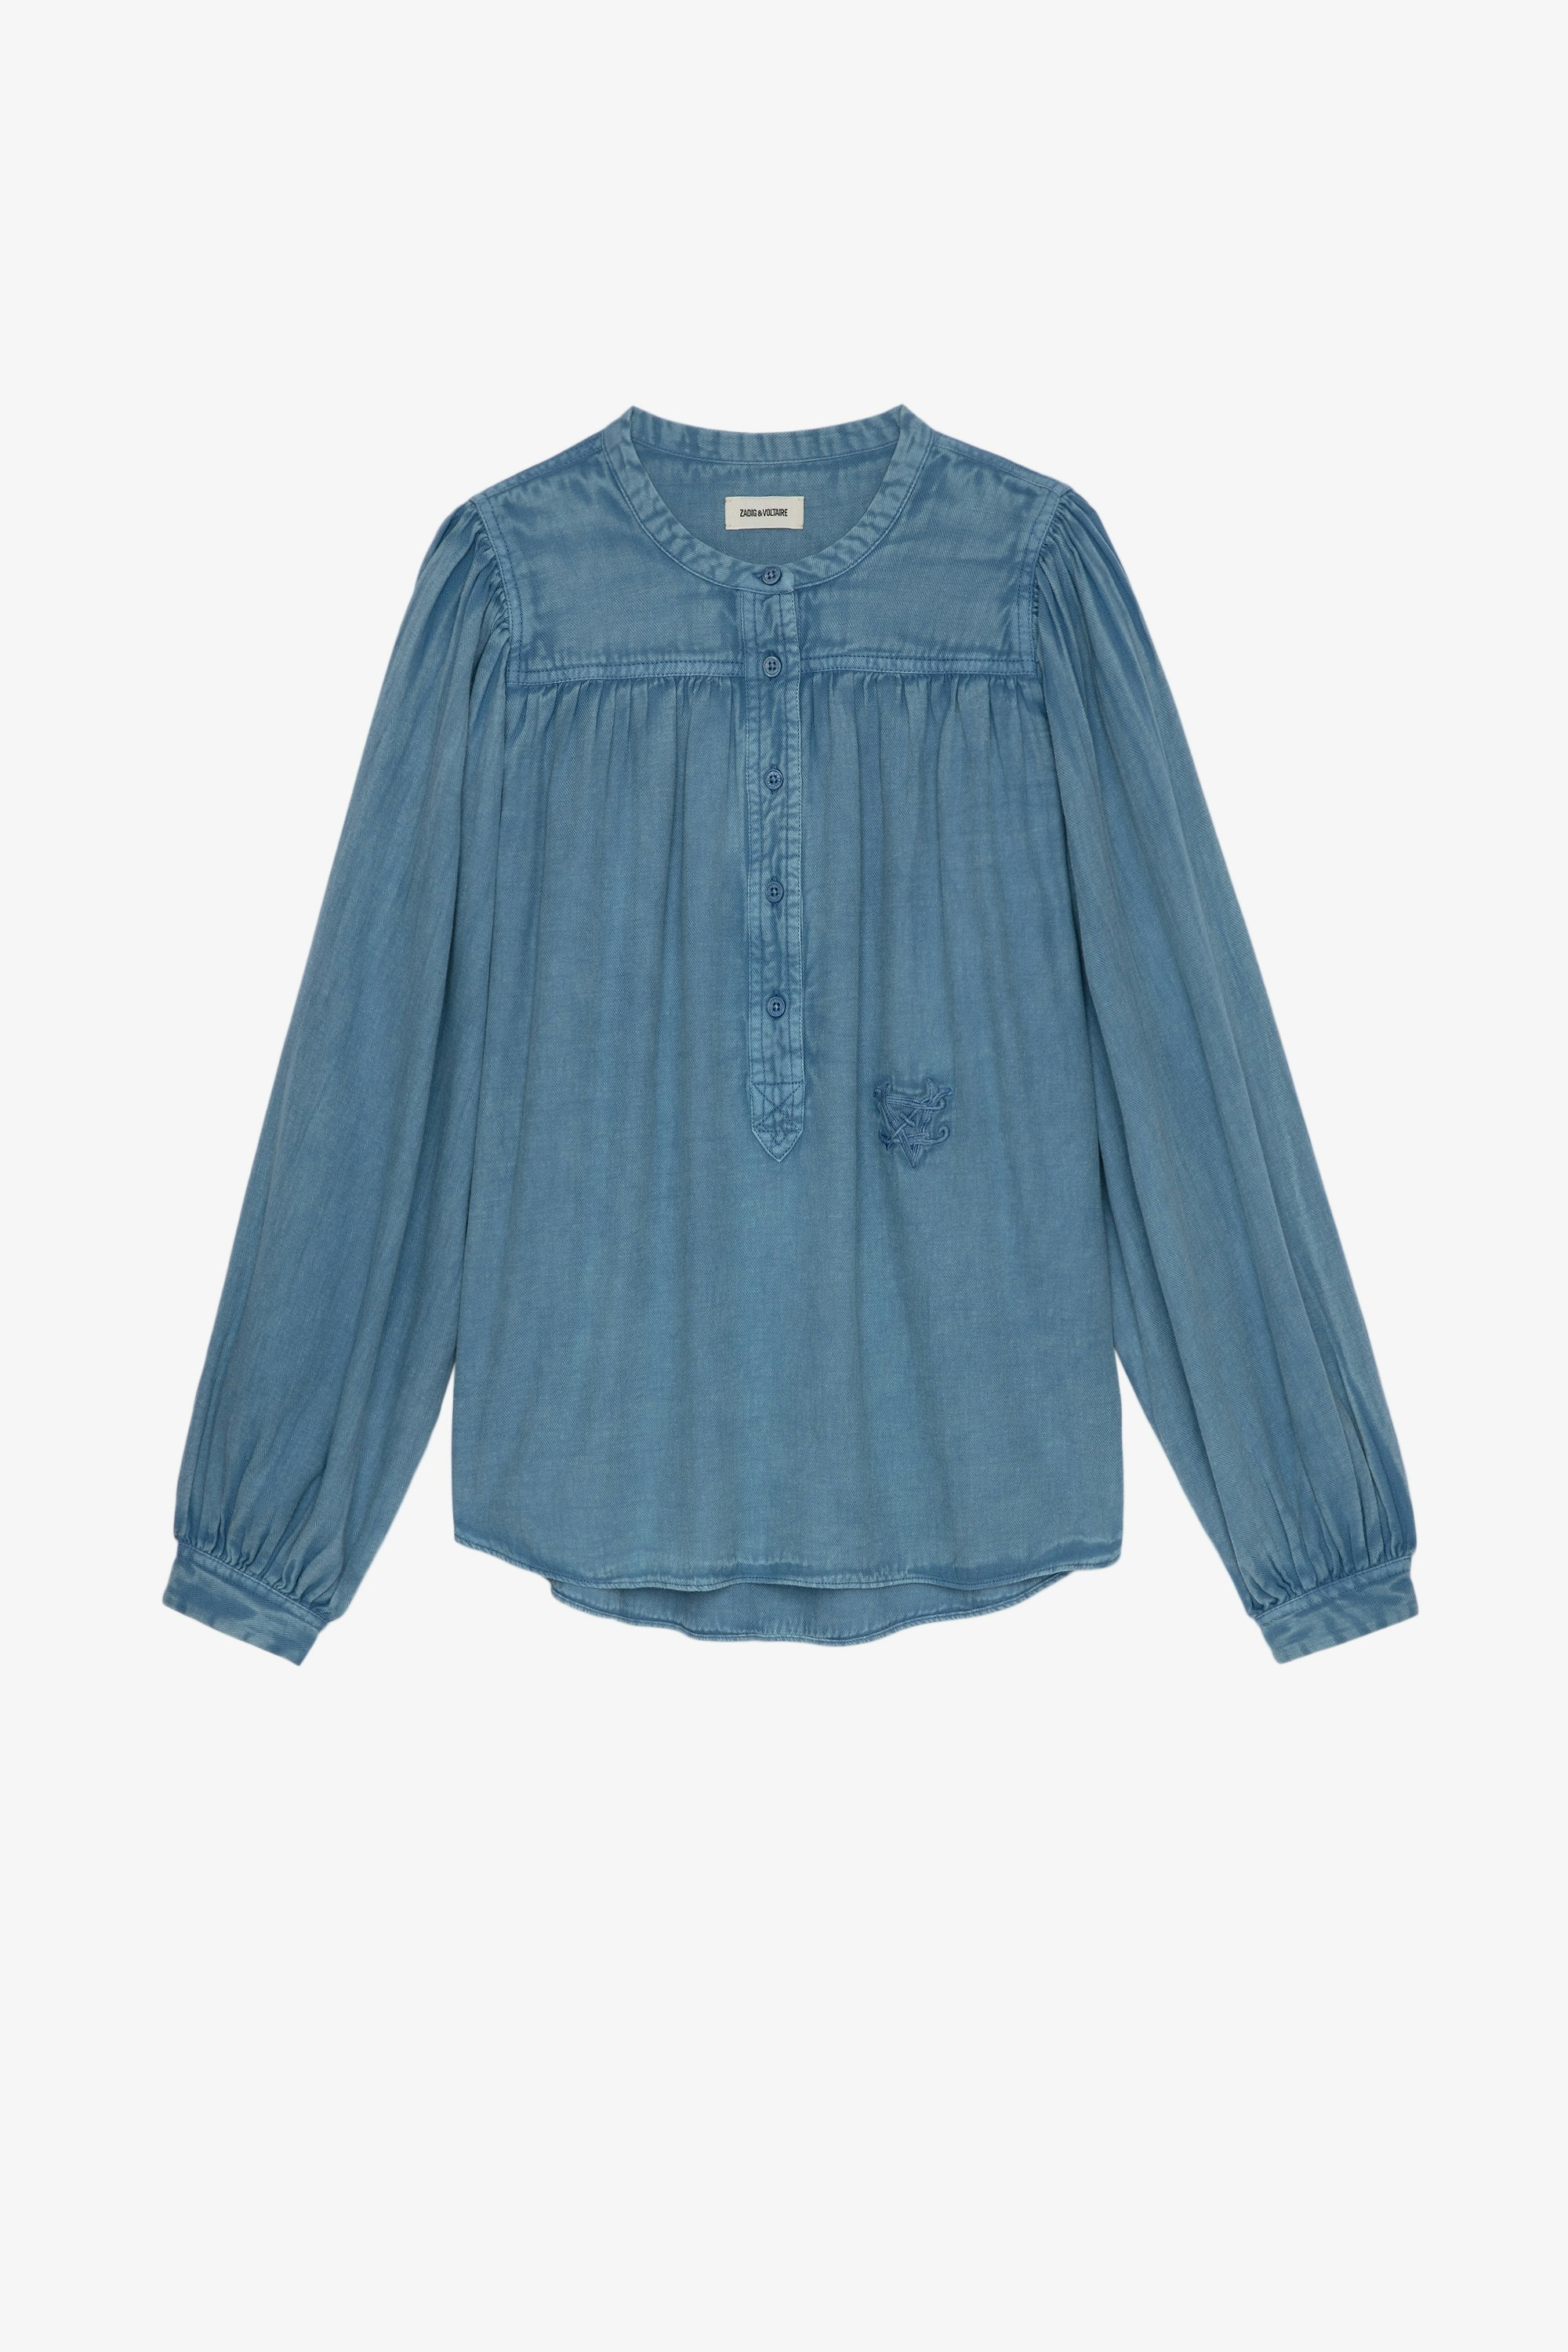 Blusa Tigy Coton Twill Blusa de manga larga de algodón azul claro para mujer 